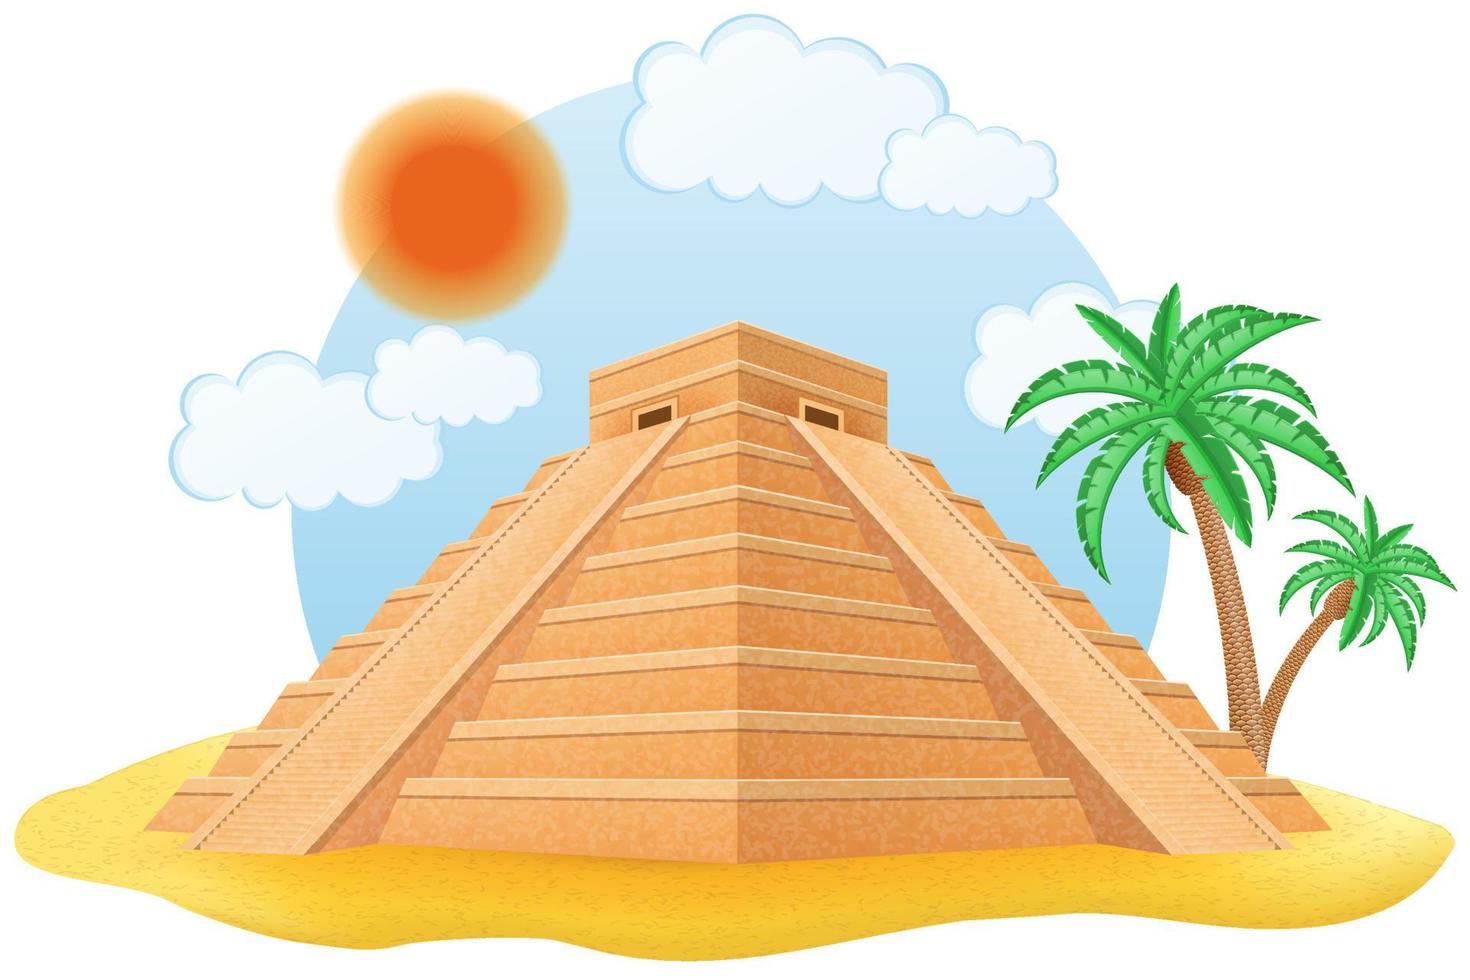 ilustração vetorial de pirâmide maia antiga isolada no fundo branco vetor